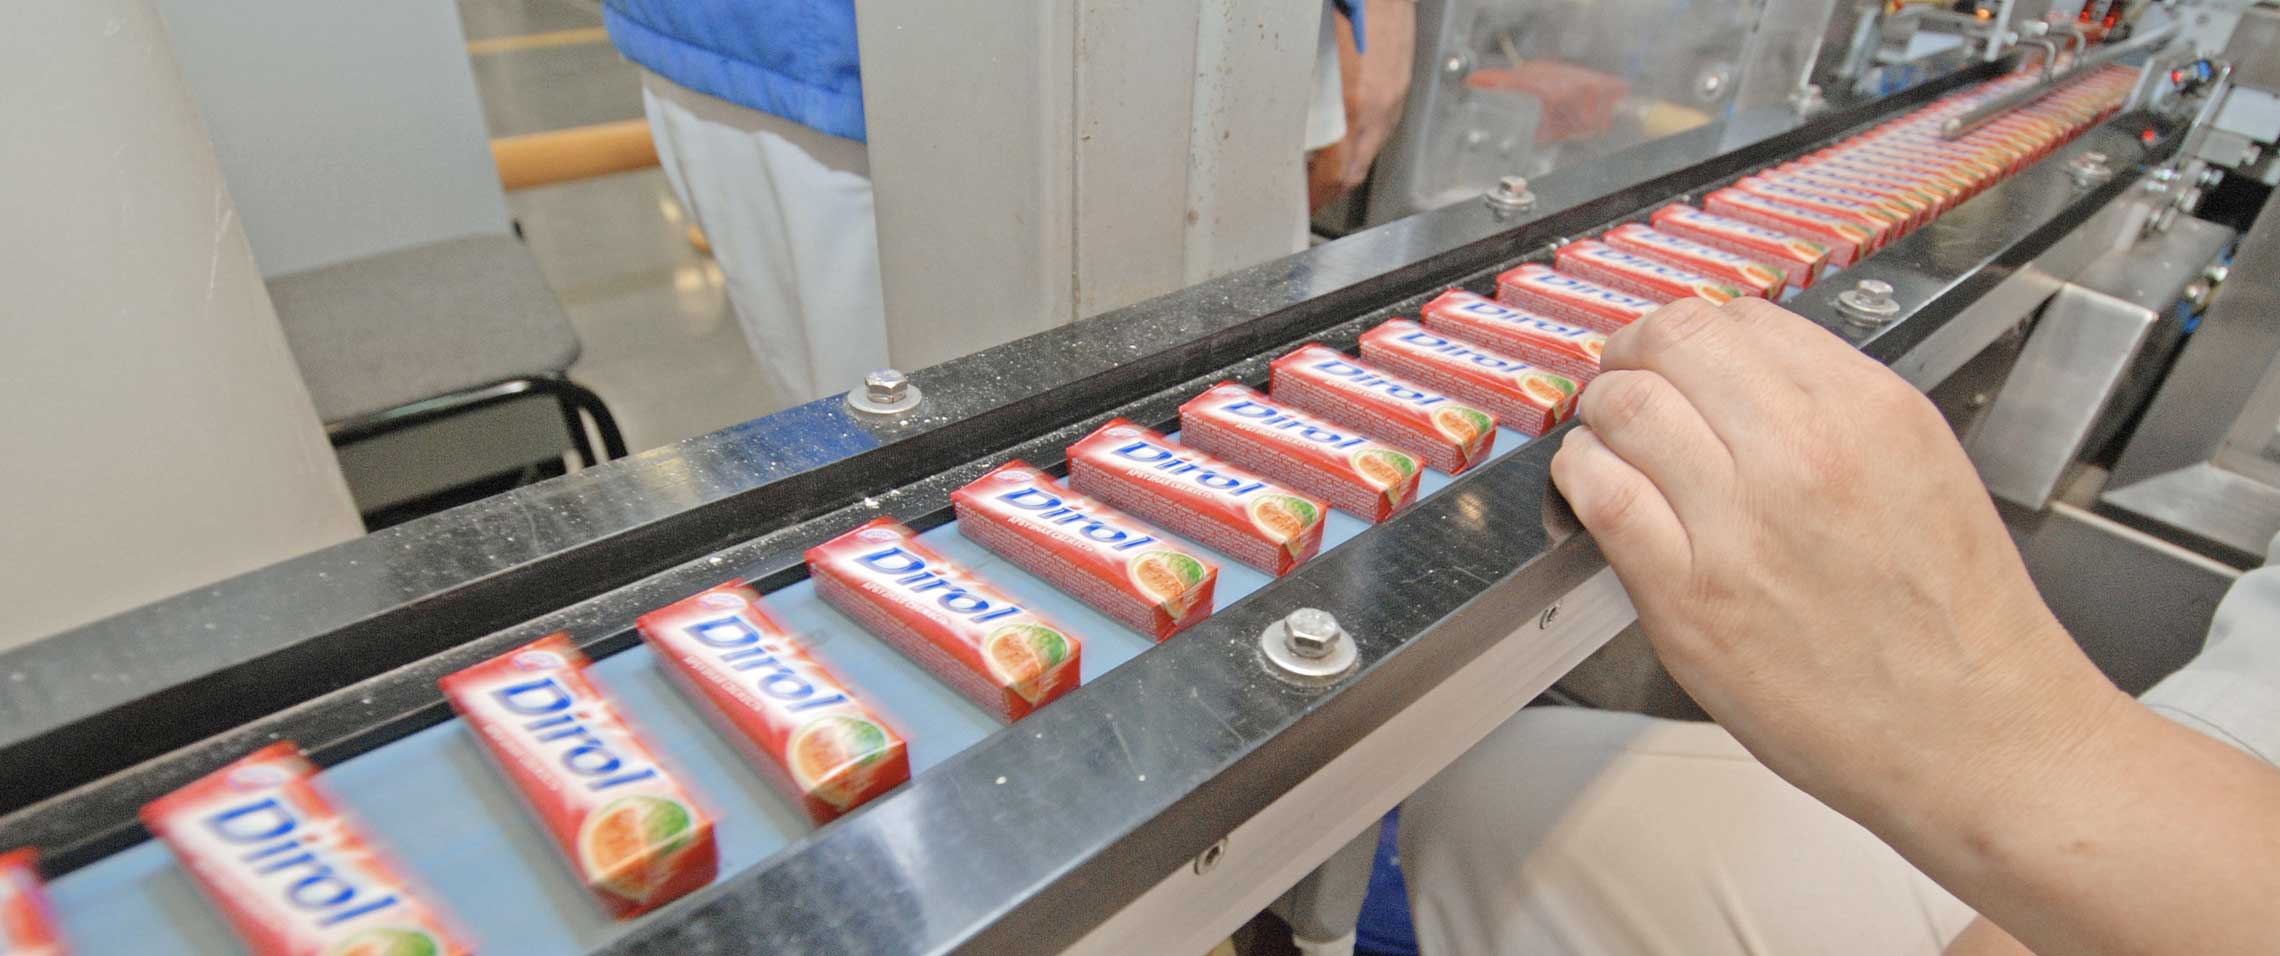 Gum manufacturing breakthrough for Mondelēz International